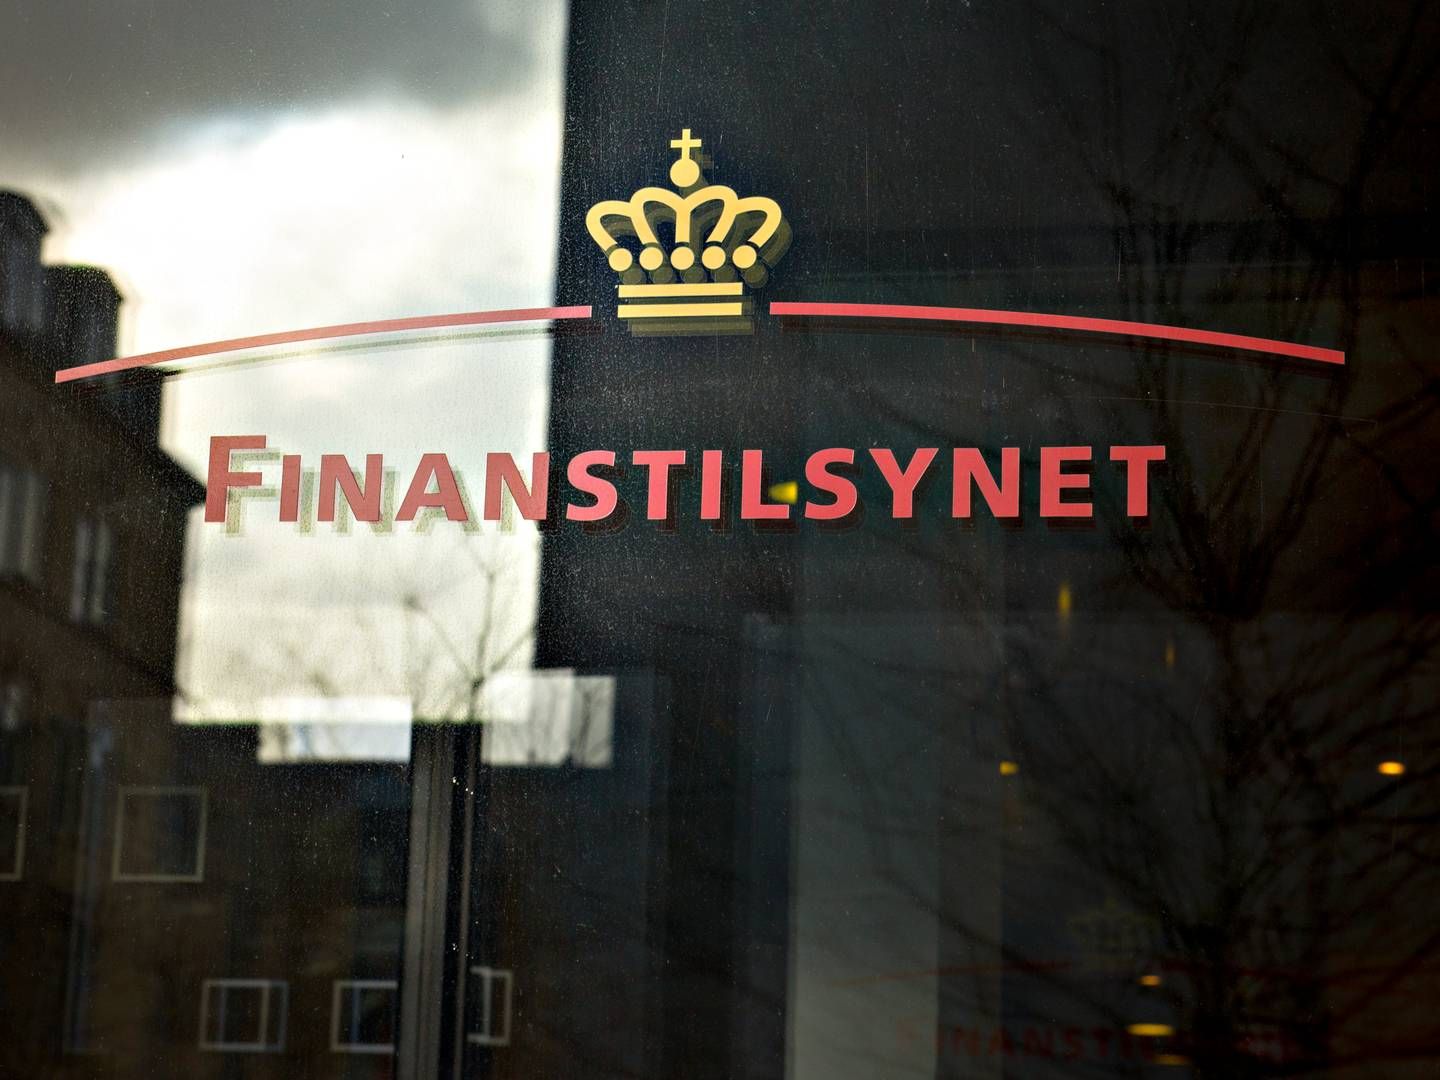 Banker har ydet balanceret rådgivning i tiden med negative renter, konkluderer Finanstilsynet i ny rapport. | Photo: Lars Krabbe